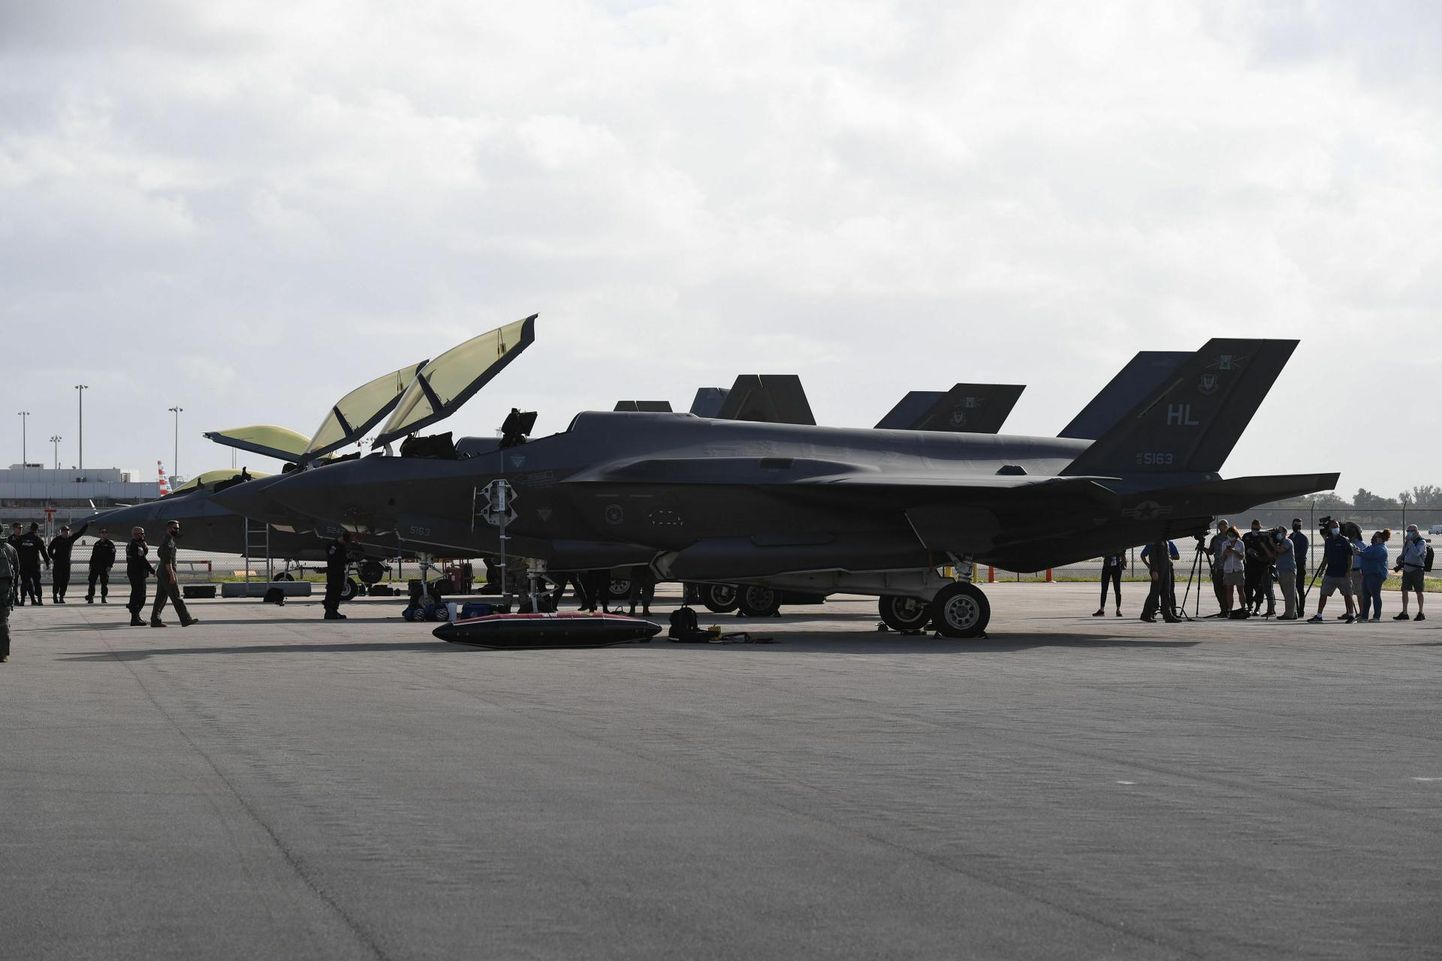 Maailma suurim kaitsetööstusettevõte on Lockheed Martin. Fotol nende toodetavad uue põlvkonna hävitajad F-35 Lightning II.